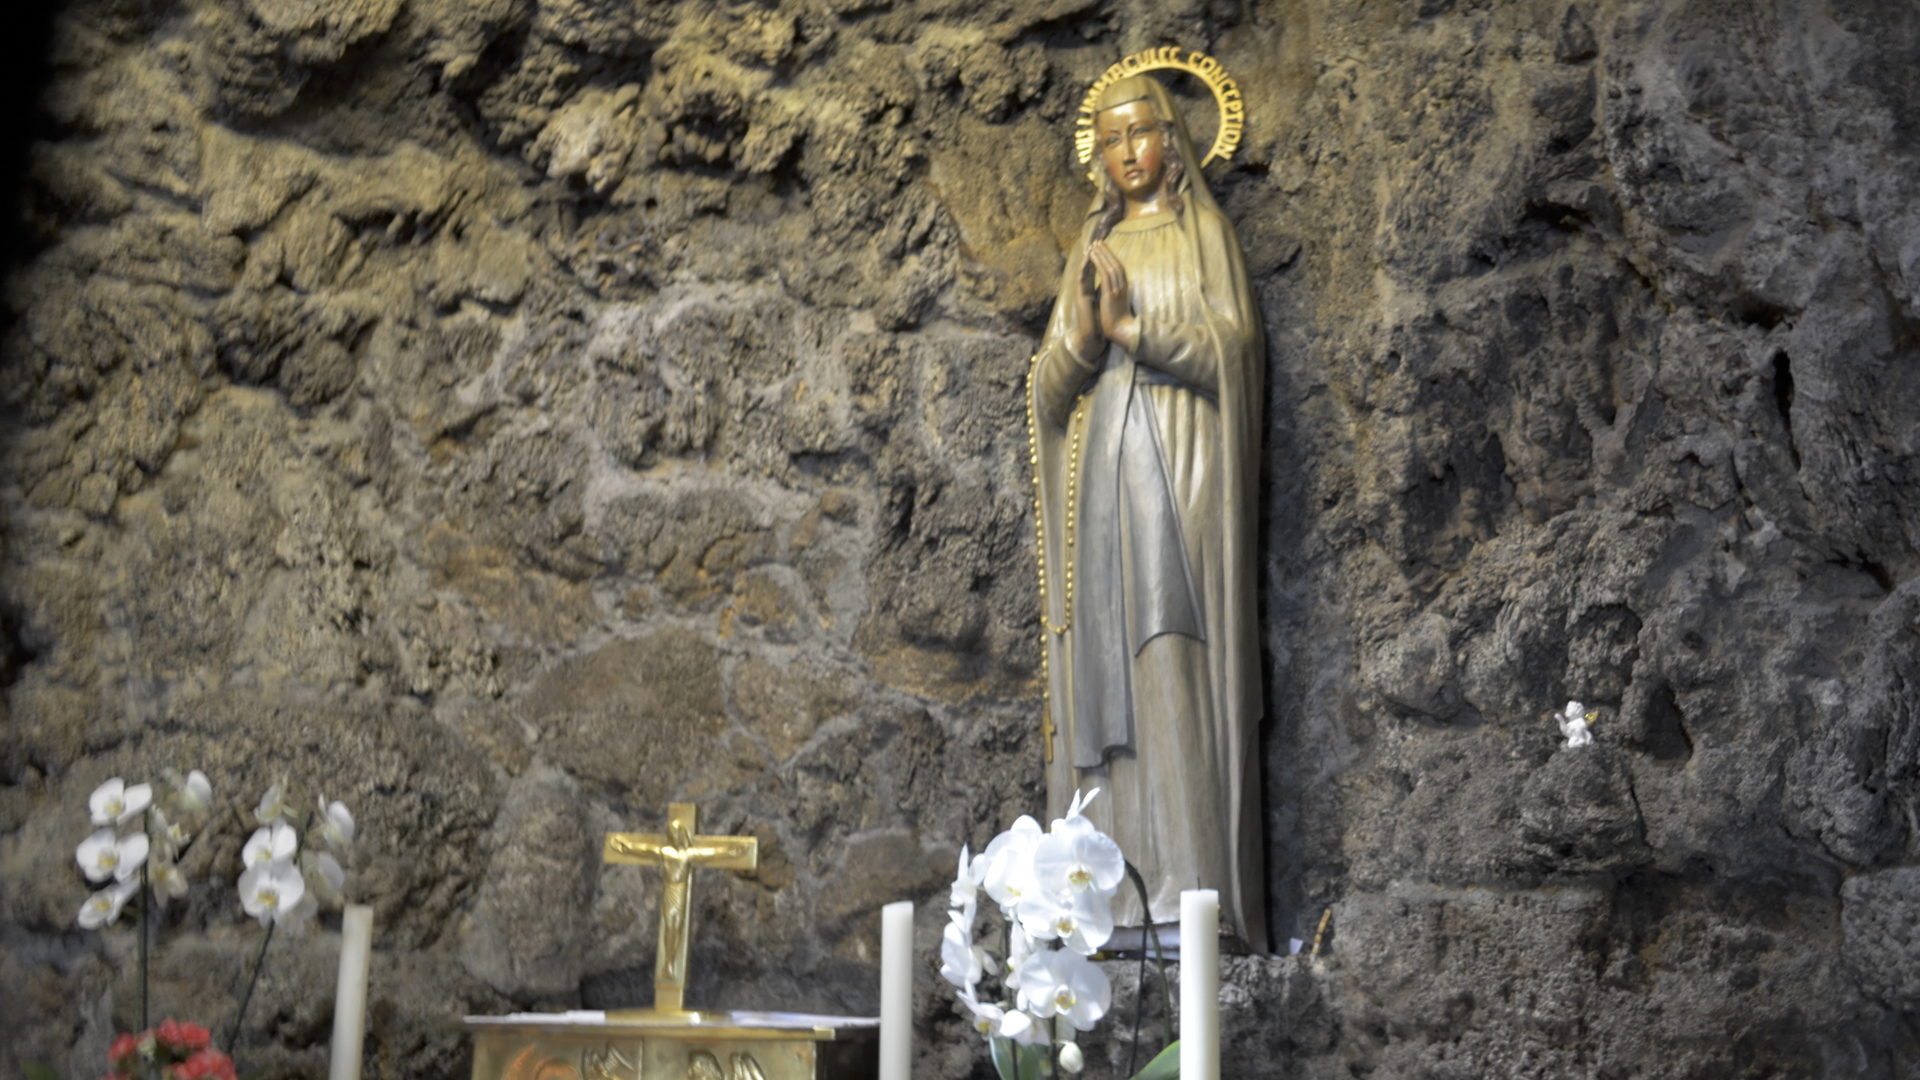 Lourdes-Grotte in Maria Lourdes, Zürich-Seebach